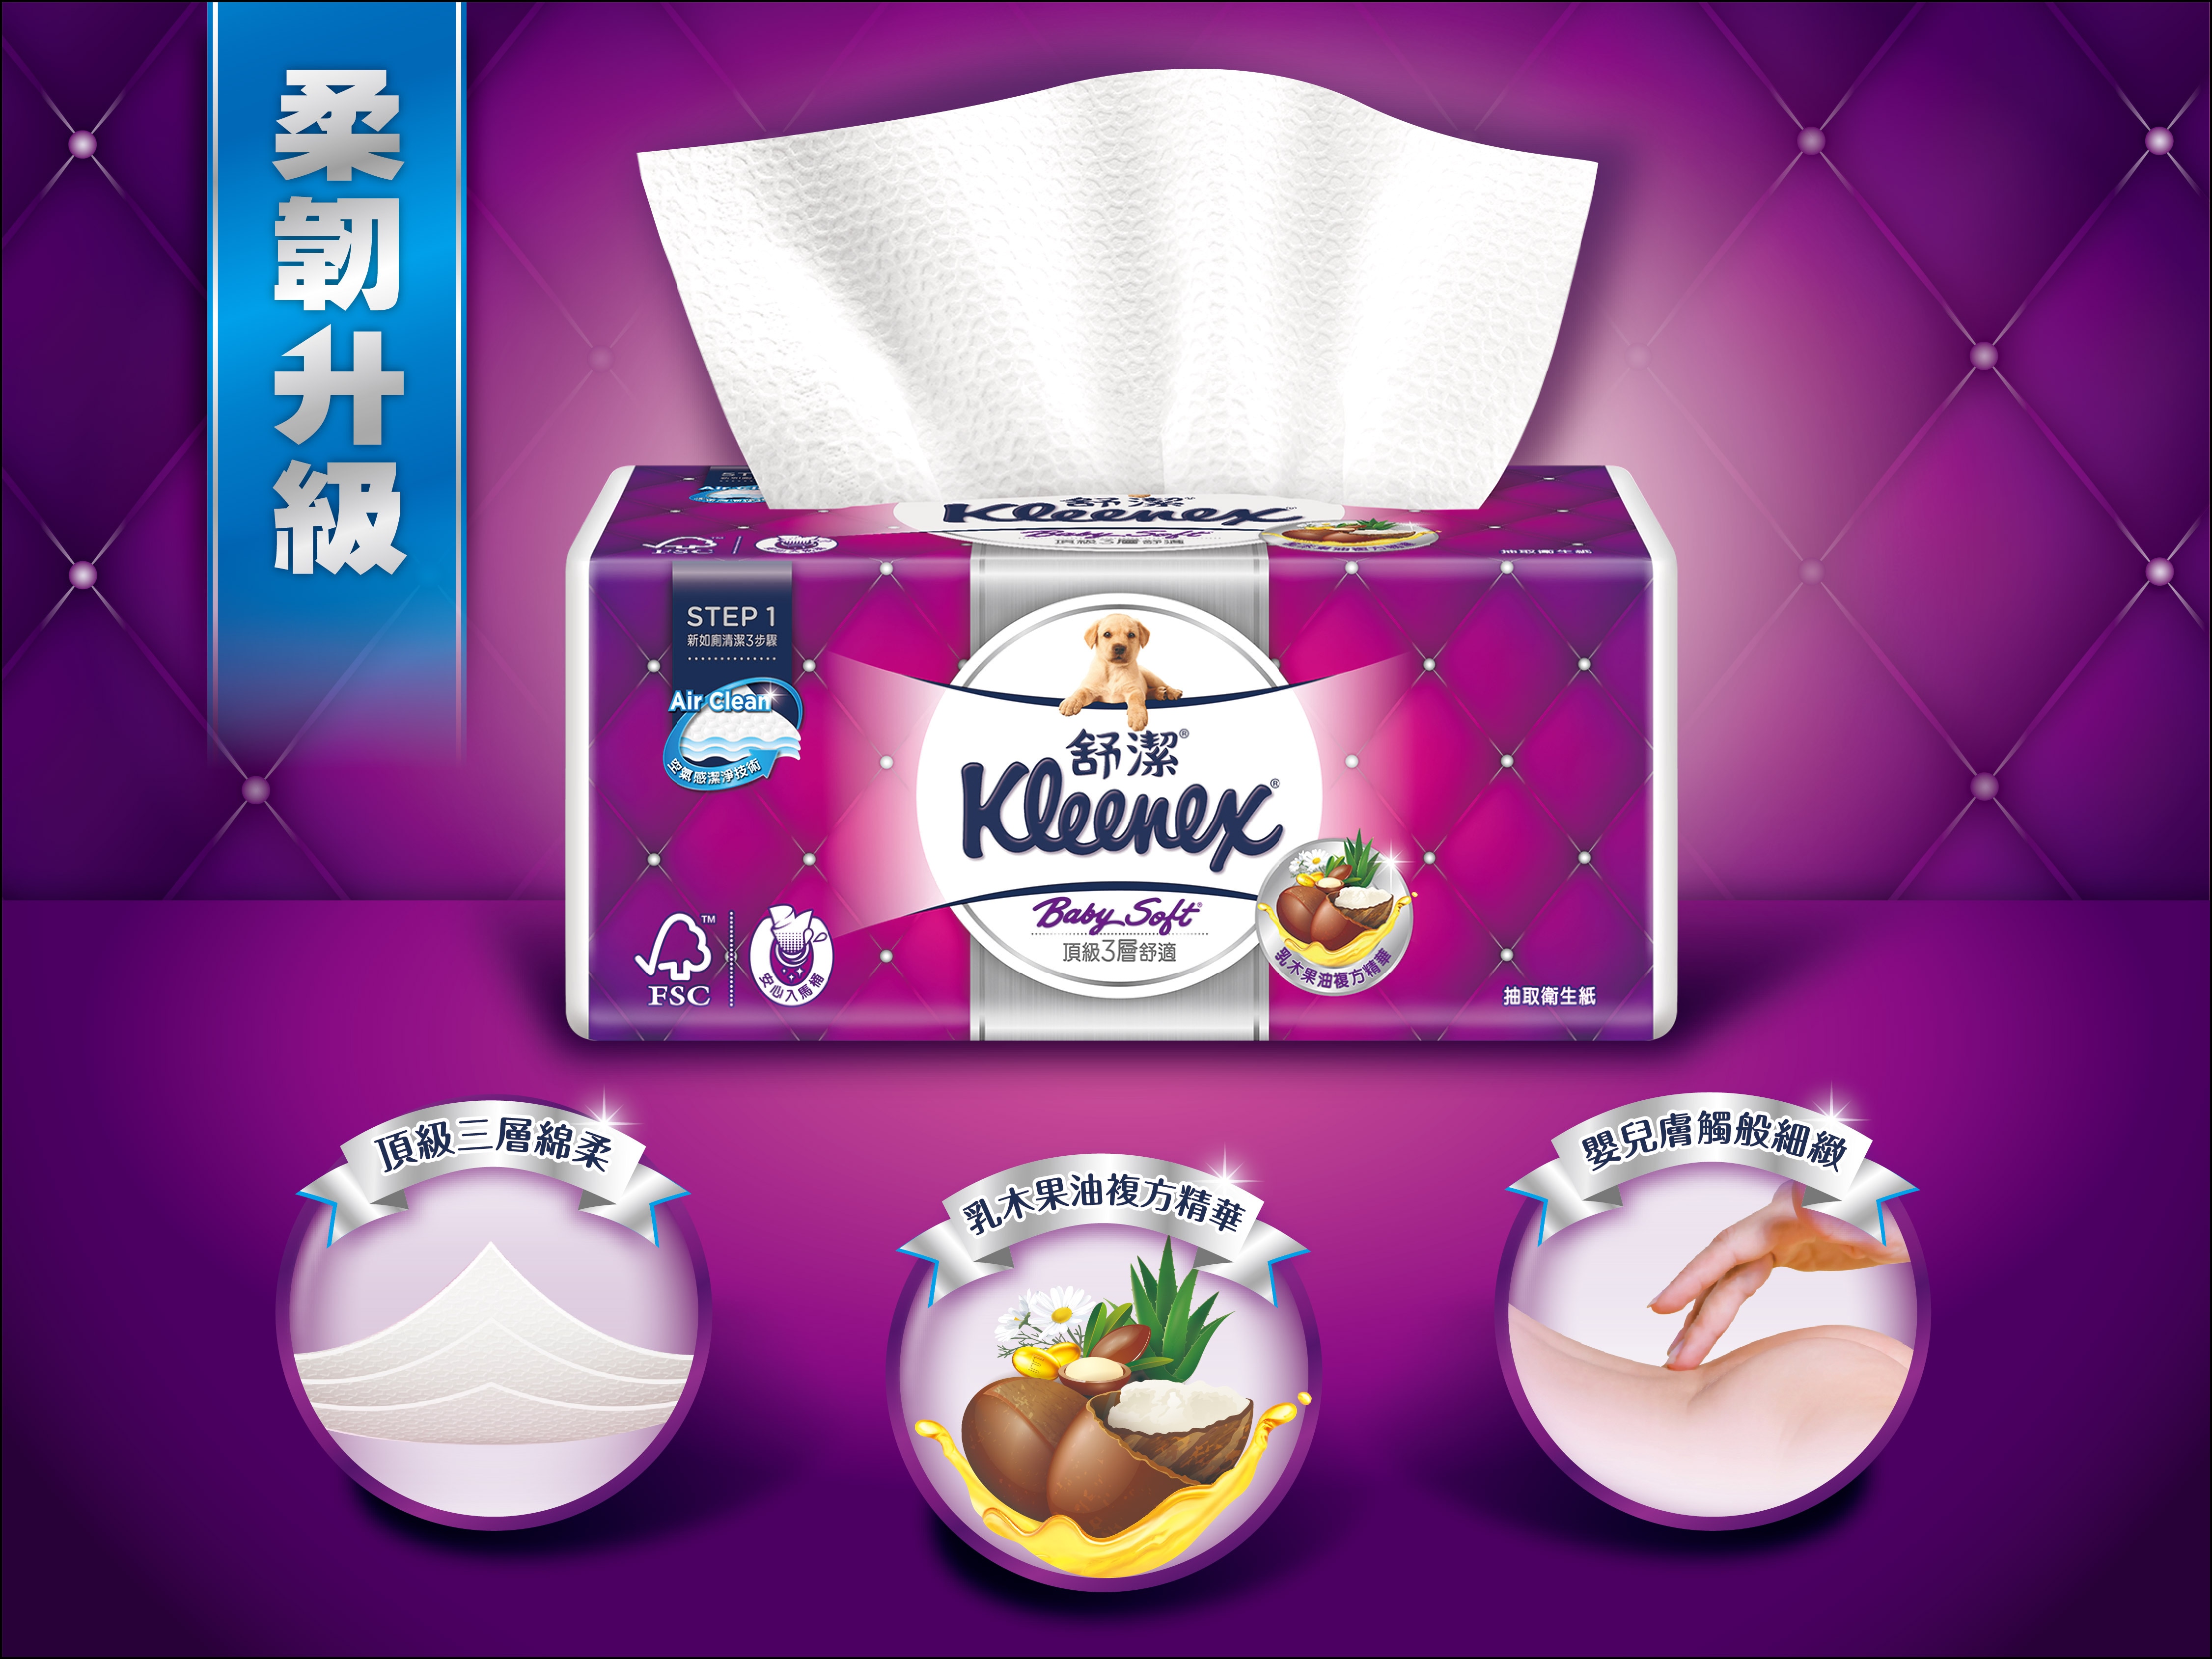 Kleenex 舒潔 三層抽取式衛生紙柔韌度升級,三層棉柔含乳木果油精華,觸感如嬰兒肌膚柔嫩。